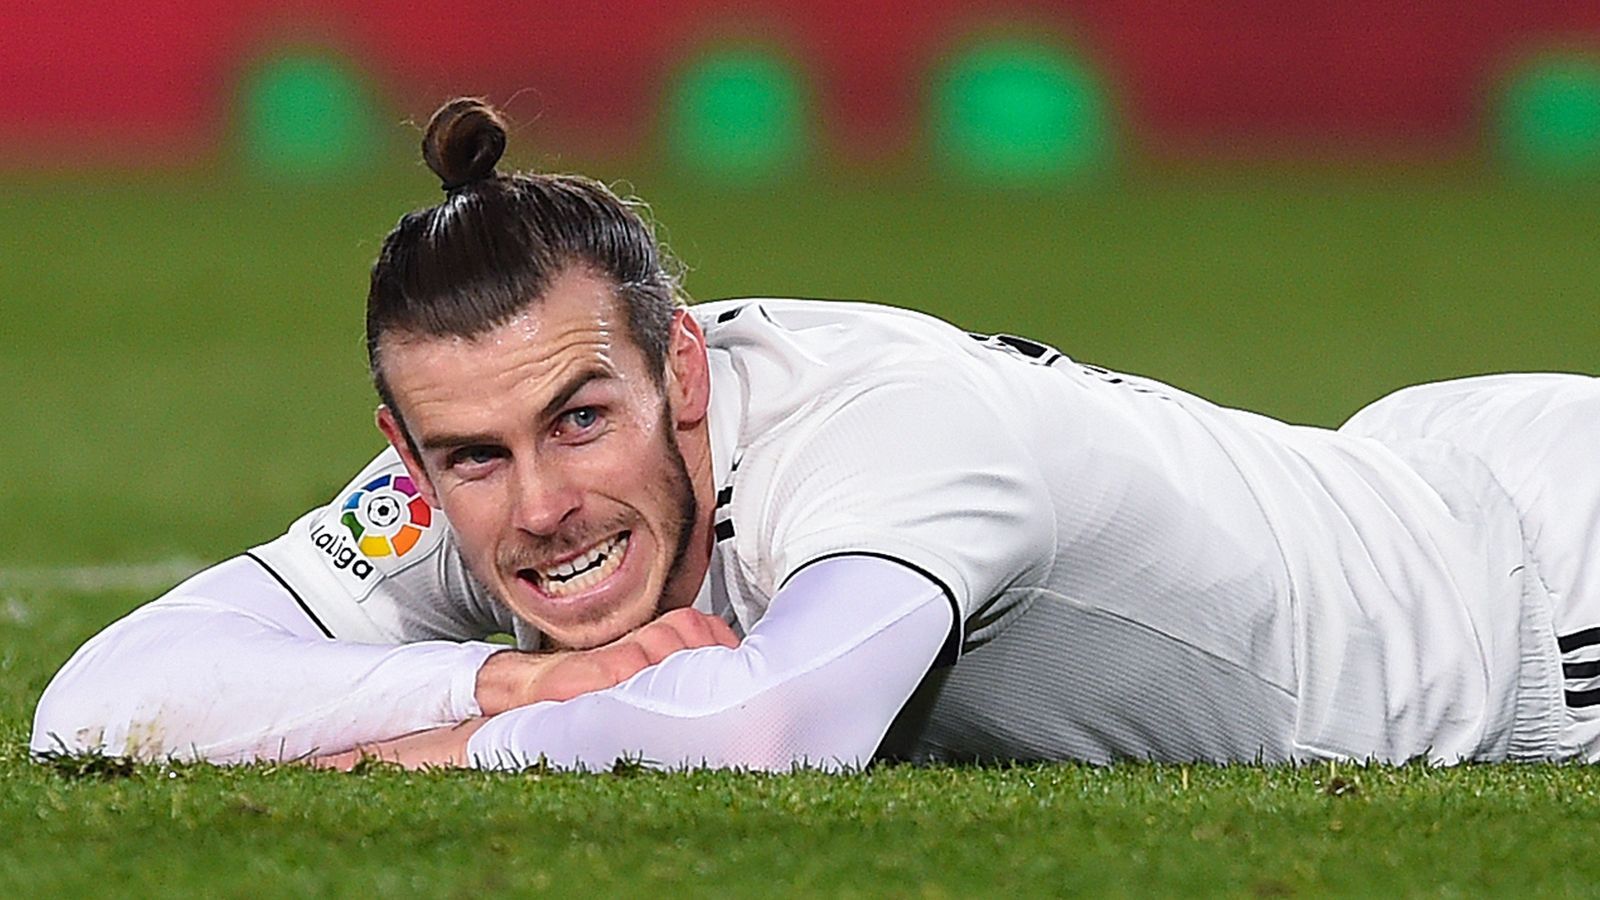 
                <strong>Nun auch Bale? Diese Stars wurden bei Real vom Hof gejagt</strong><br>
                Als Bale erkannte, dass er nicht als erster Einwechselspieler eingeplant war, brach er das Aufwärmtraining ab und schmollte mit gekreuzten Beinen auf der Bank. Nachdem er doch eingewechselt worden war und den entscheidenden Treffer erzielt hatte, verzichtete er nicht nur auf einen Torjubel, sondern stieß sogar Vazquez von sich, als der versuchte, ihn zu umarmen. Eine Respektlosigkeit, die nicht nur die Teamkollegen, sondern auch Klubpräsident Florentino Perez erzürnt haben soll, sonst immer einer von Bales Fürsprechern. Der 29-jährige Waliser droht der nächste Star zu werden, der (trotz großer sportlicher Erfolge) bei Real vom Hof gejagt wird. ran.de gibt vor dem Clasico gegen den FC Barcelona in der Copa del Rey (ab 20:30 Uhr im Liveticker auf ran.de) einen Überblick über die prominentesten "königlichen Opfer".
              